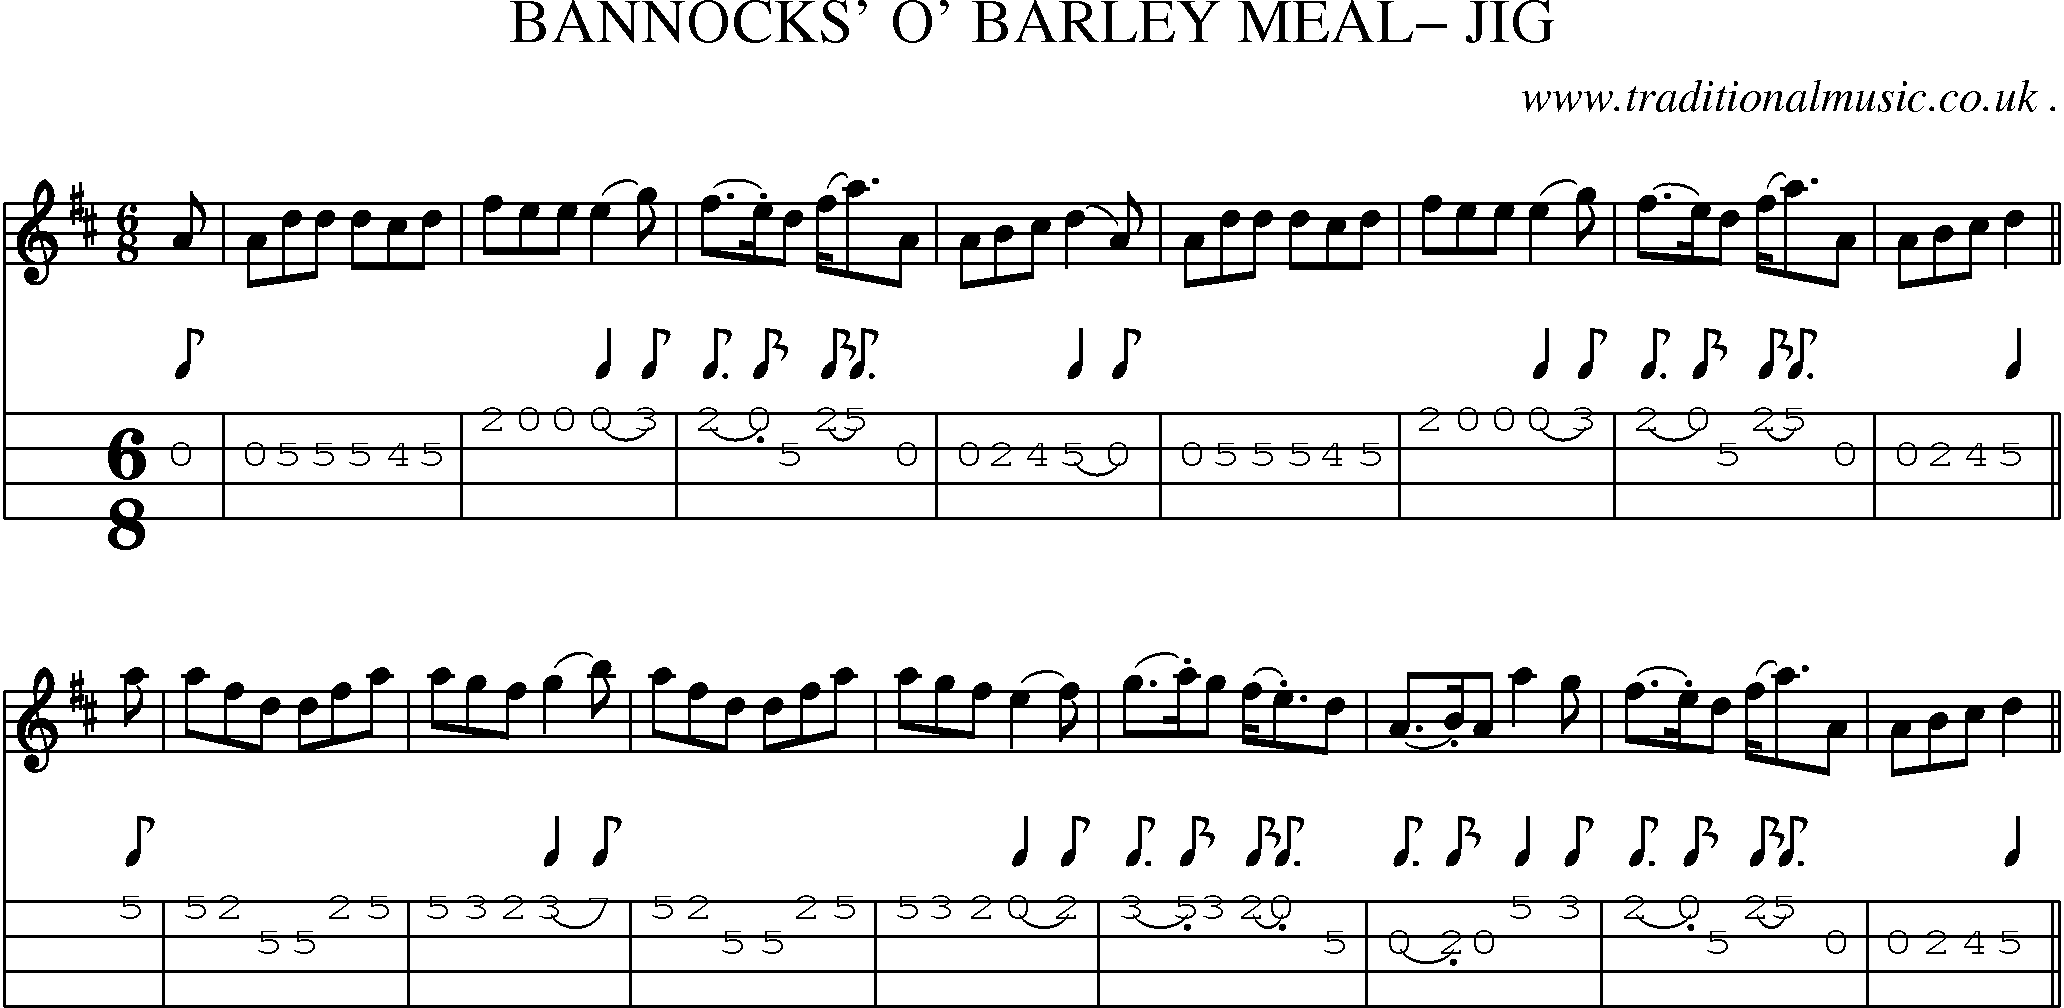 Sheet-Music and Mandolin Tabs for Bannocks O Barley Meal